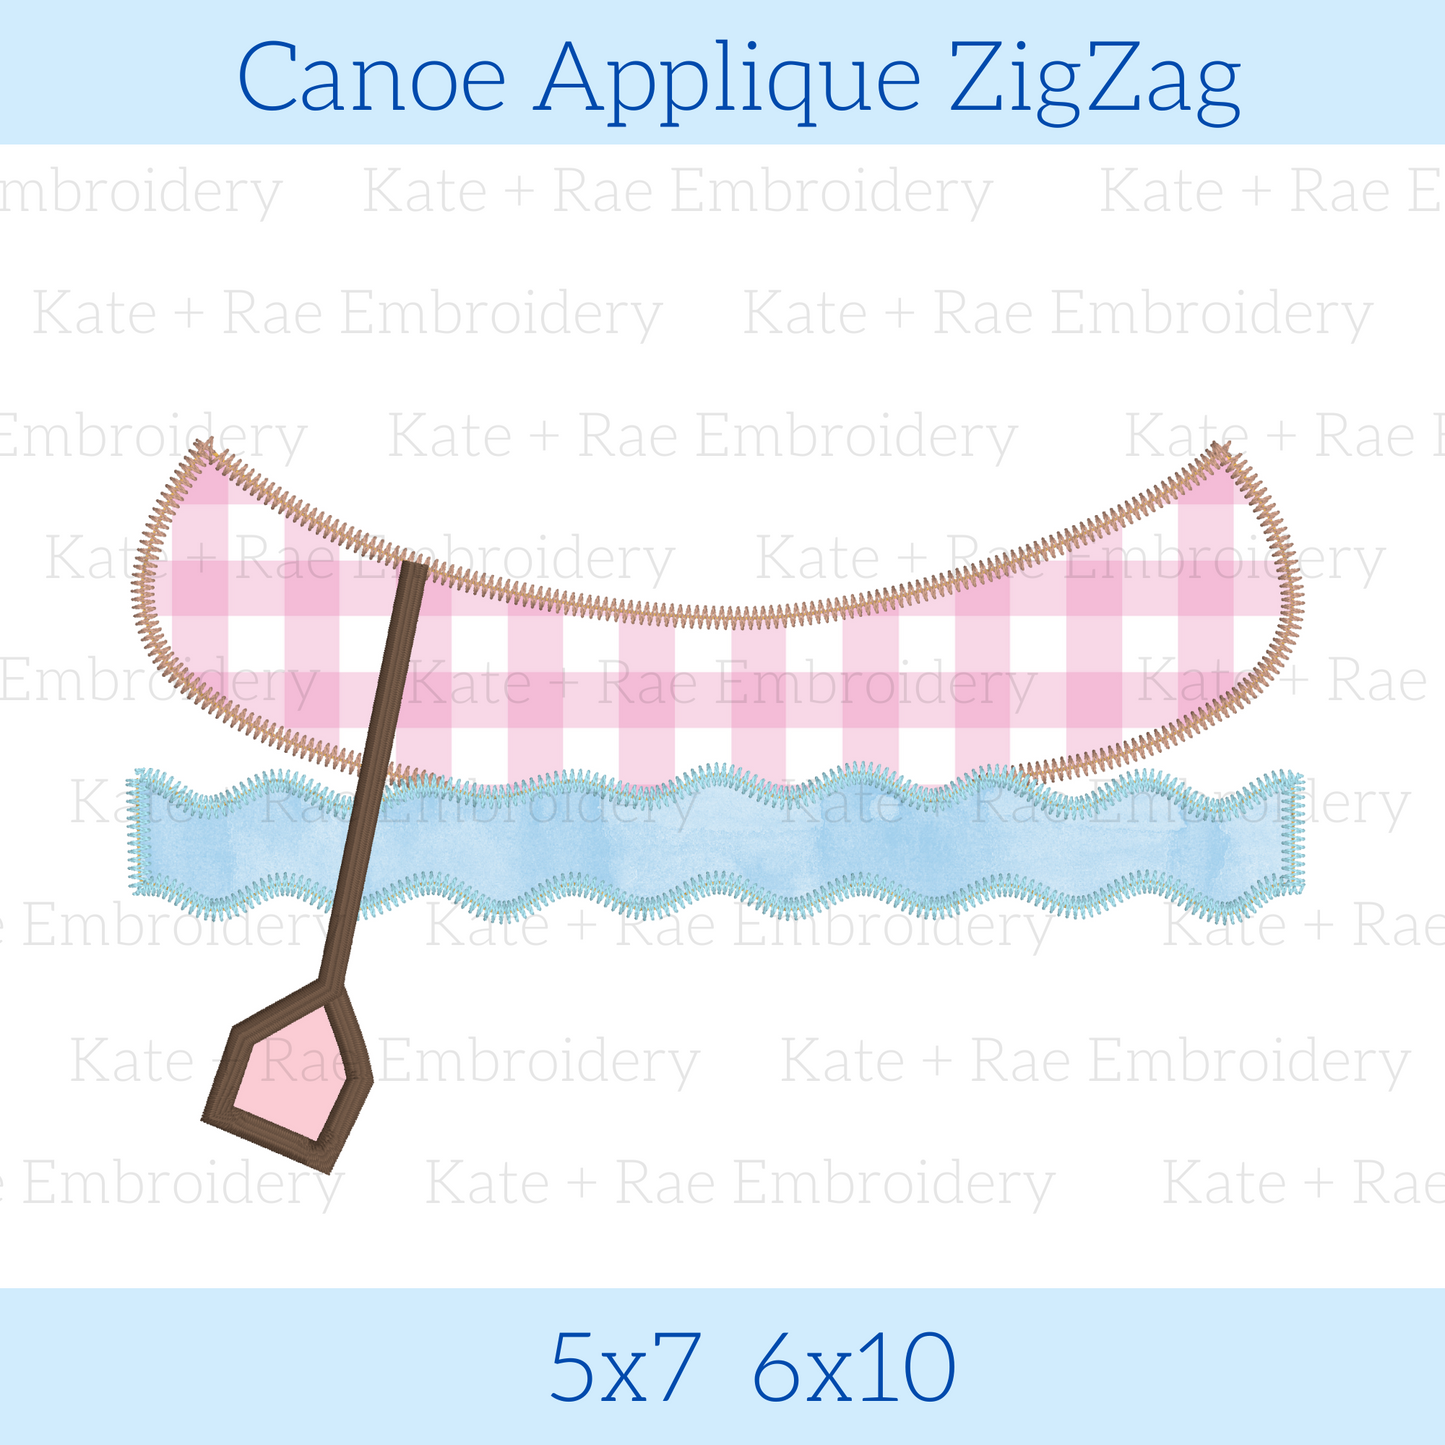 Canoe Applique Zigzag